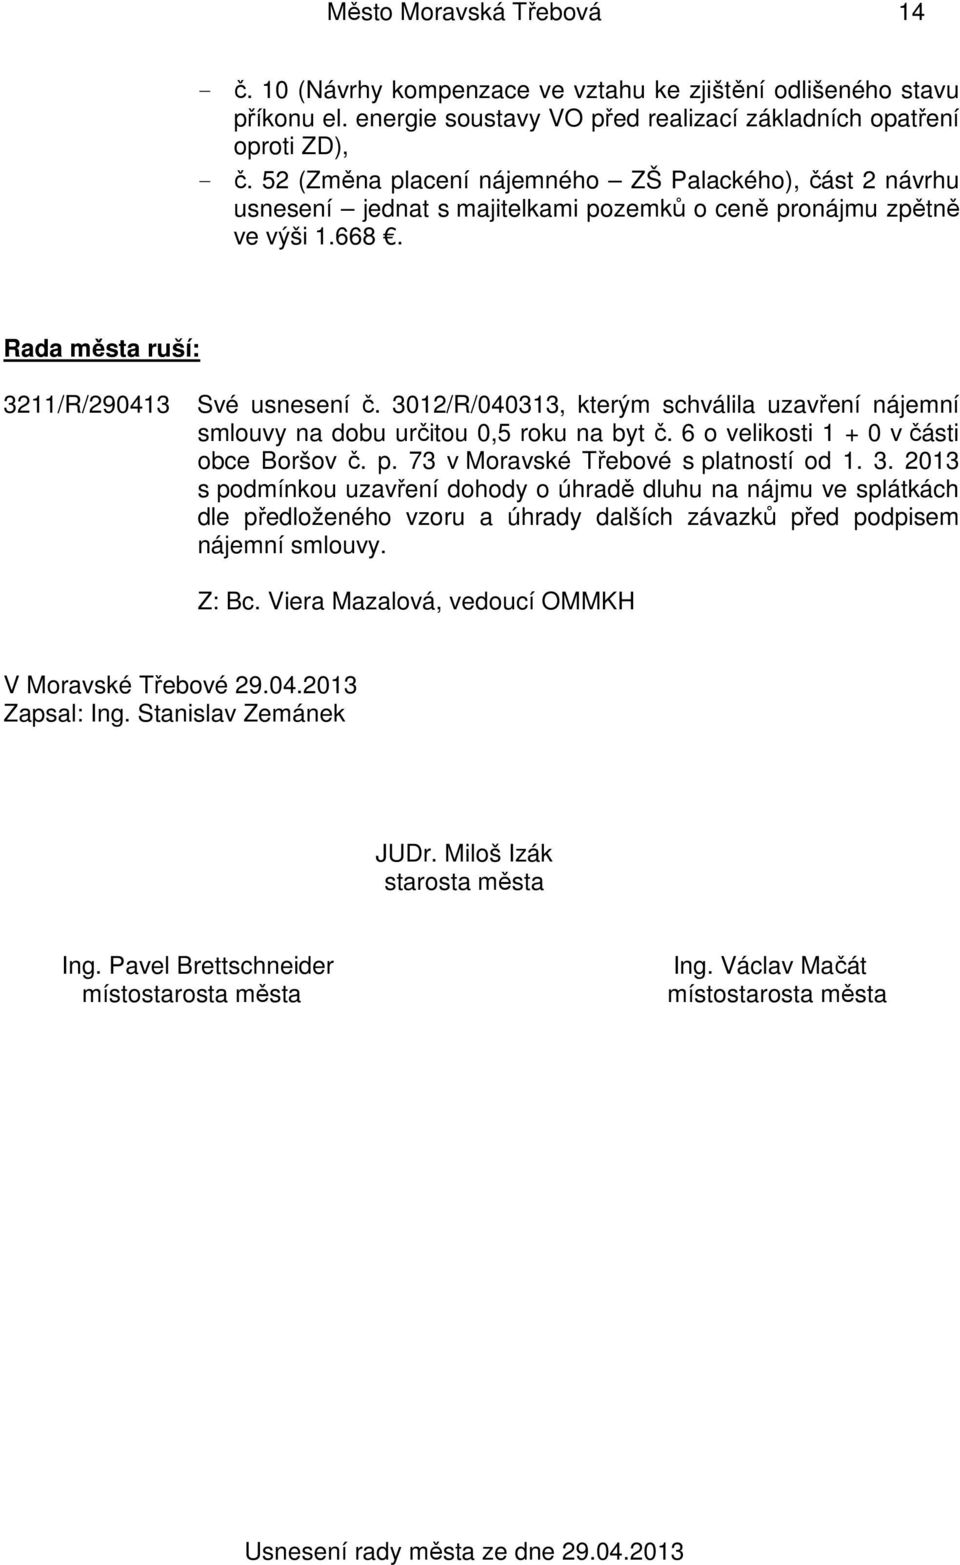 3012/R/040313, kterým schválila uzavření nájemní smlouvy na dobu určitou 0,5 roku na byt č. 6 o velikosti 1 + 0 v části obce Boršov č. p. 73 v Moravské Třebové s platností od 1. 3.